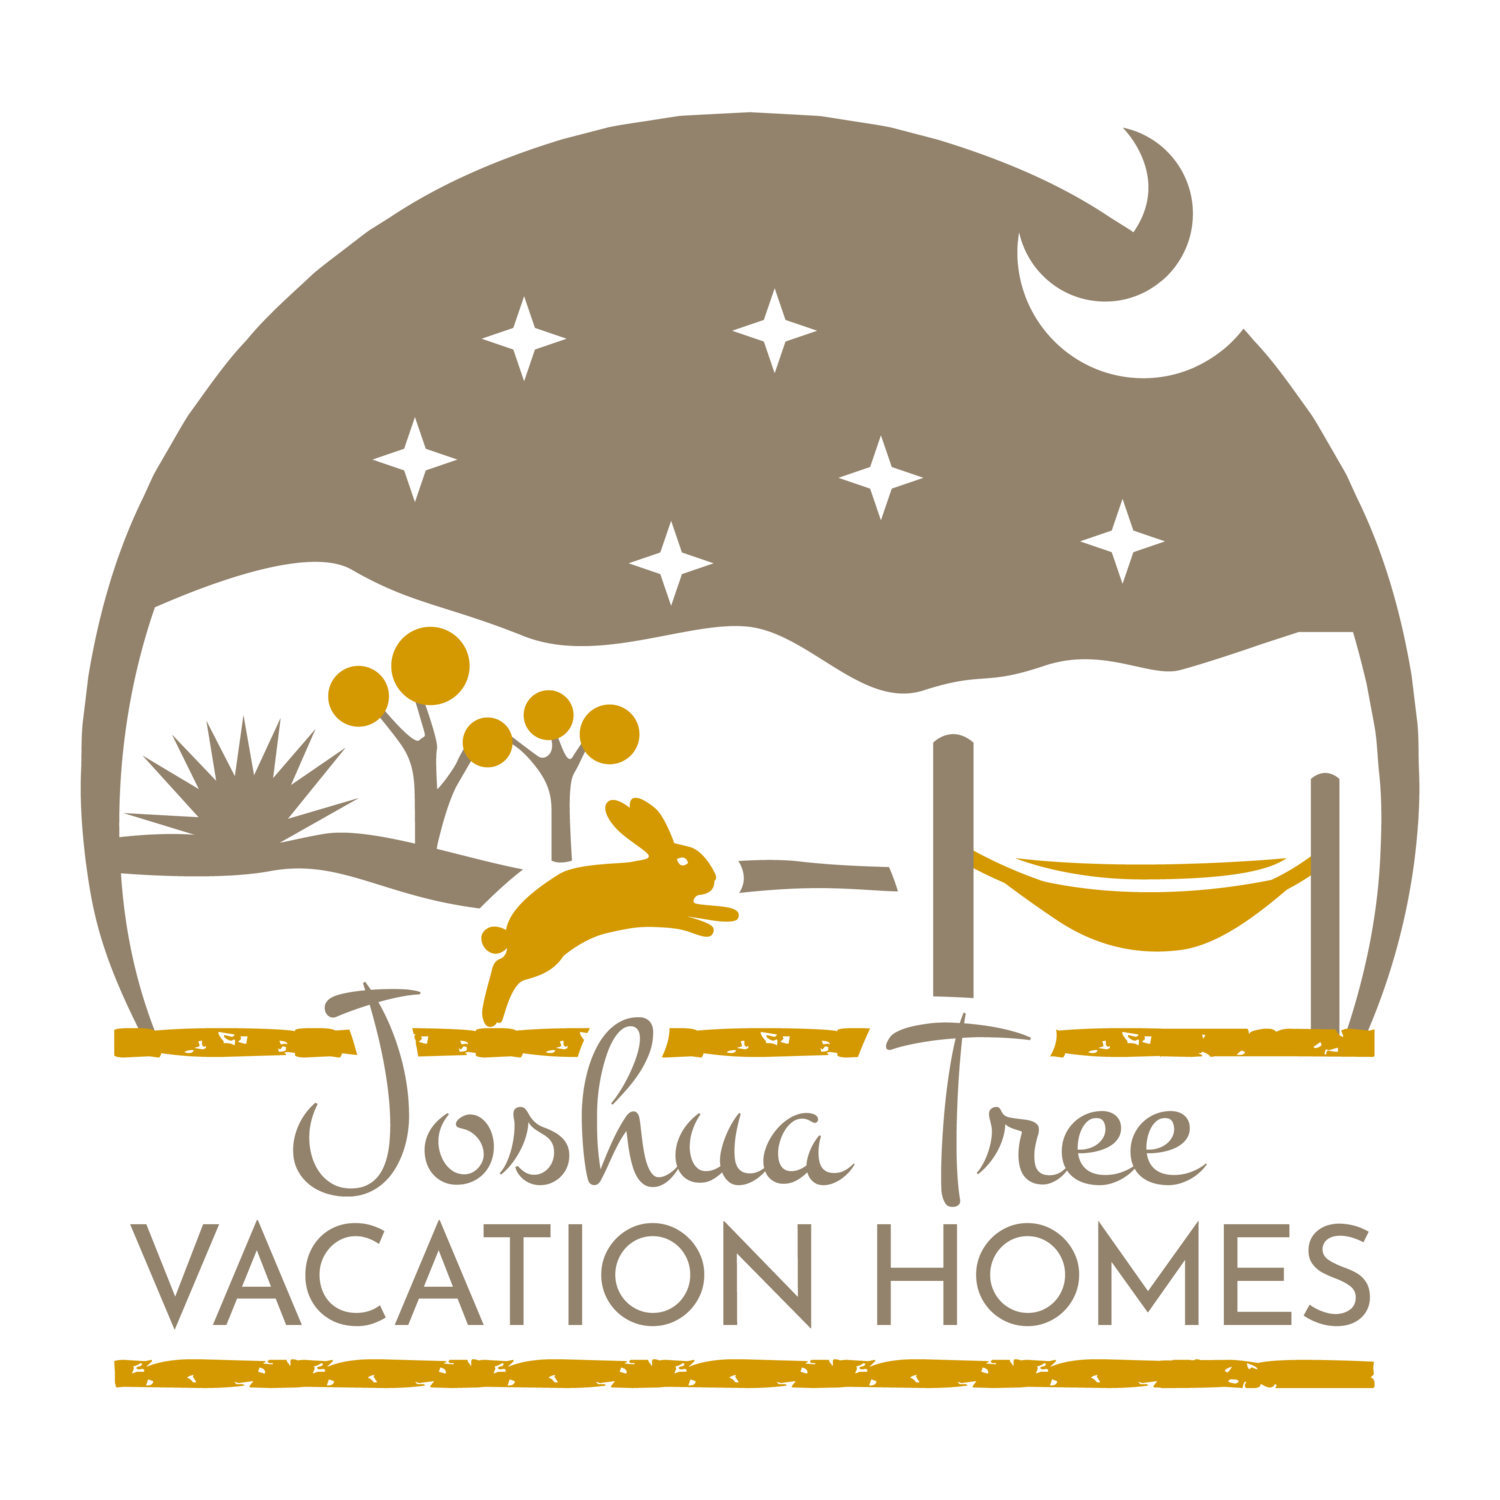 Joshua Tree Vacation Homes